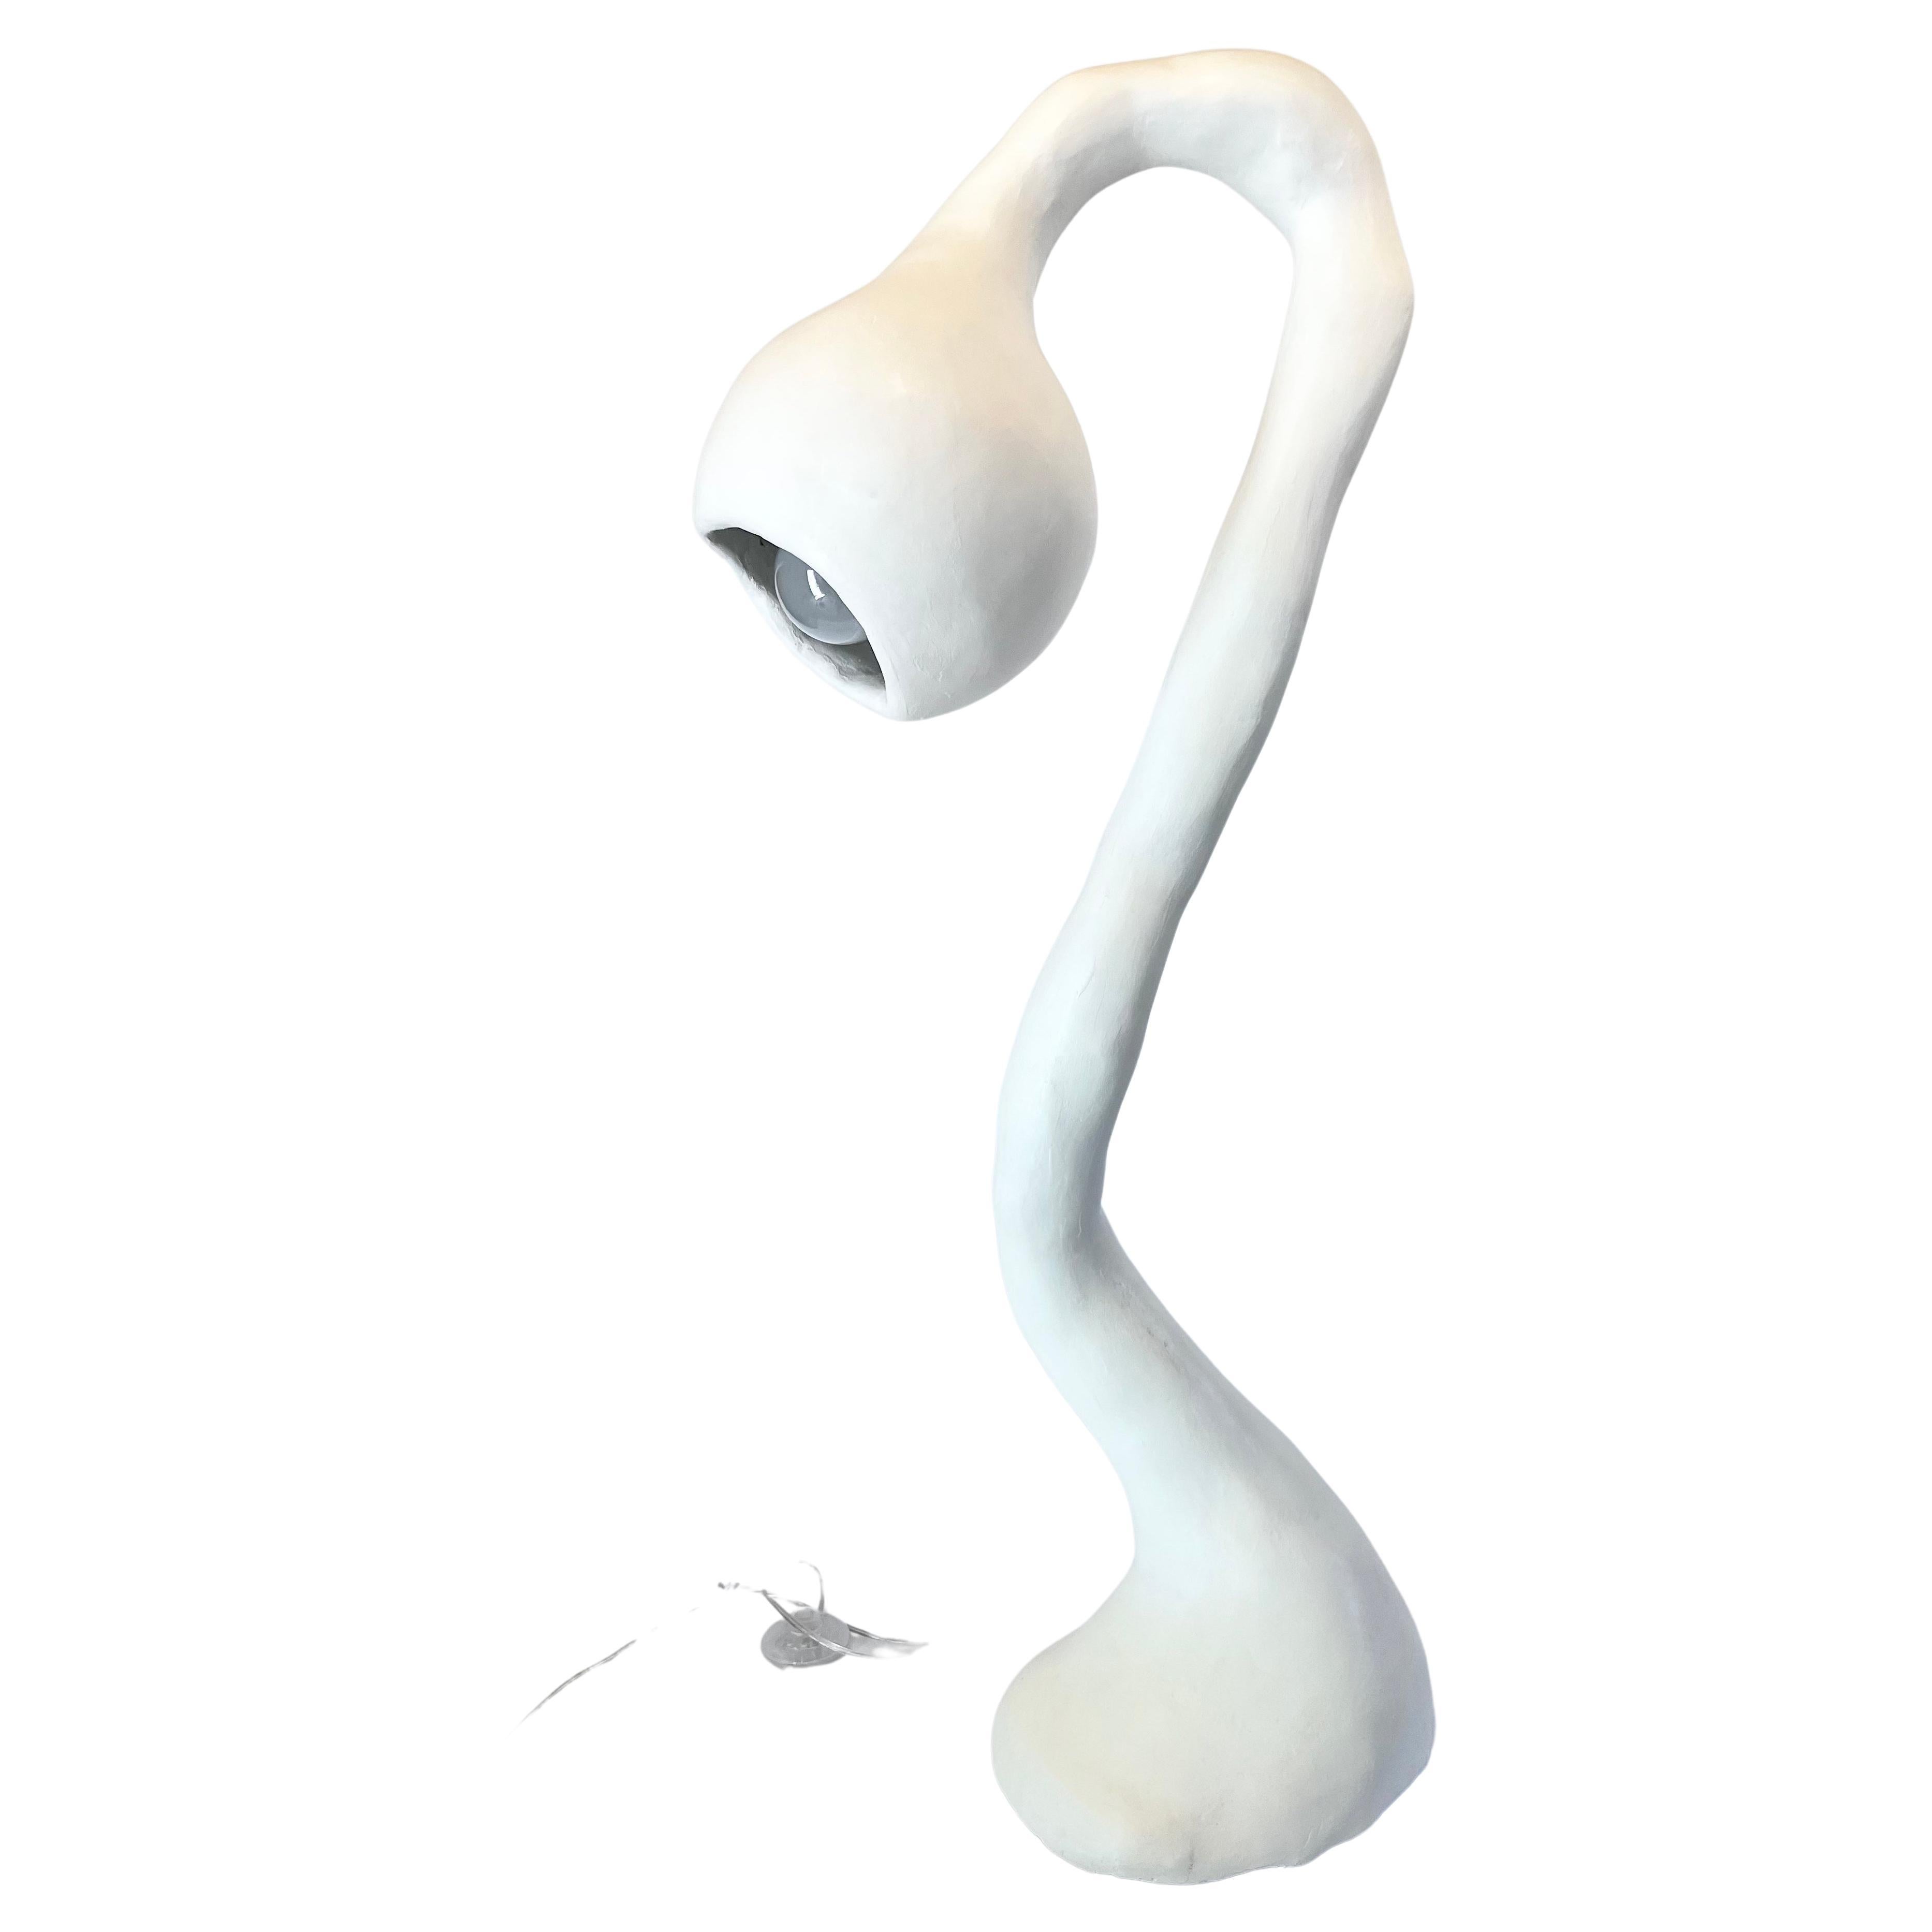 Le lampadaire N.003 de la série Biomorphic du Studio Chora s'inspire de la nature de l'expérience humaine. Il s'agit d'une sculpture lumineuse de deuxième génération, fabriquée à la main à partir d'une pierre composite à base de plâtre. Le composite